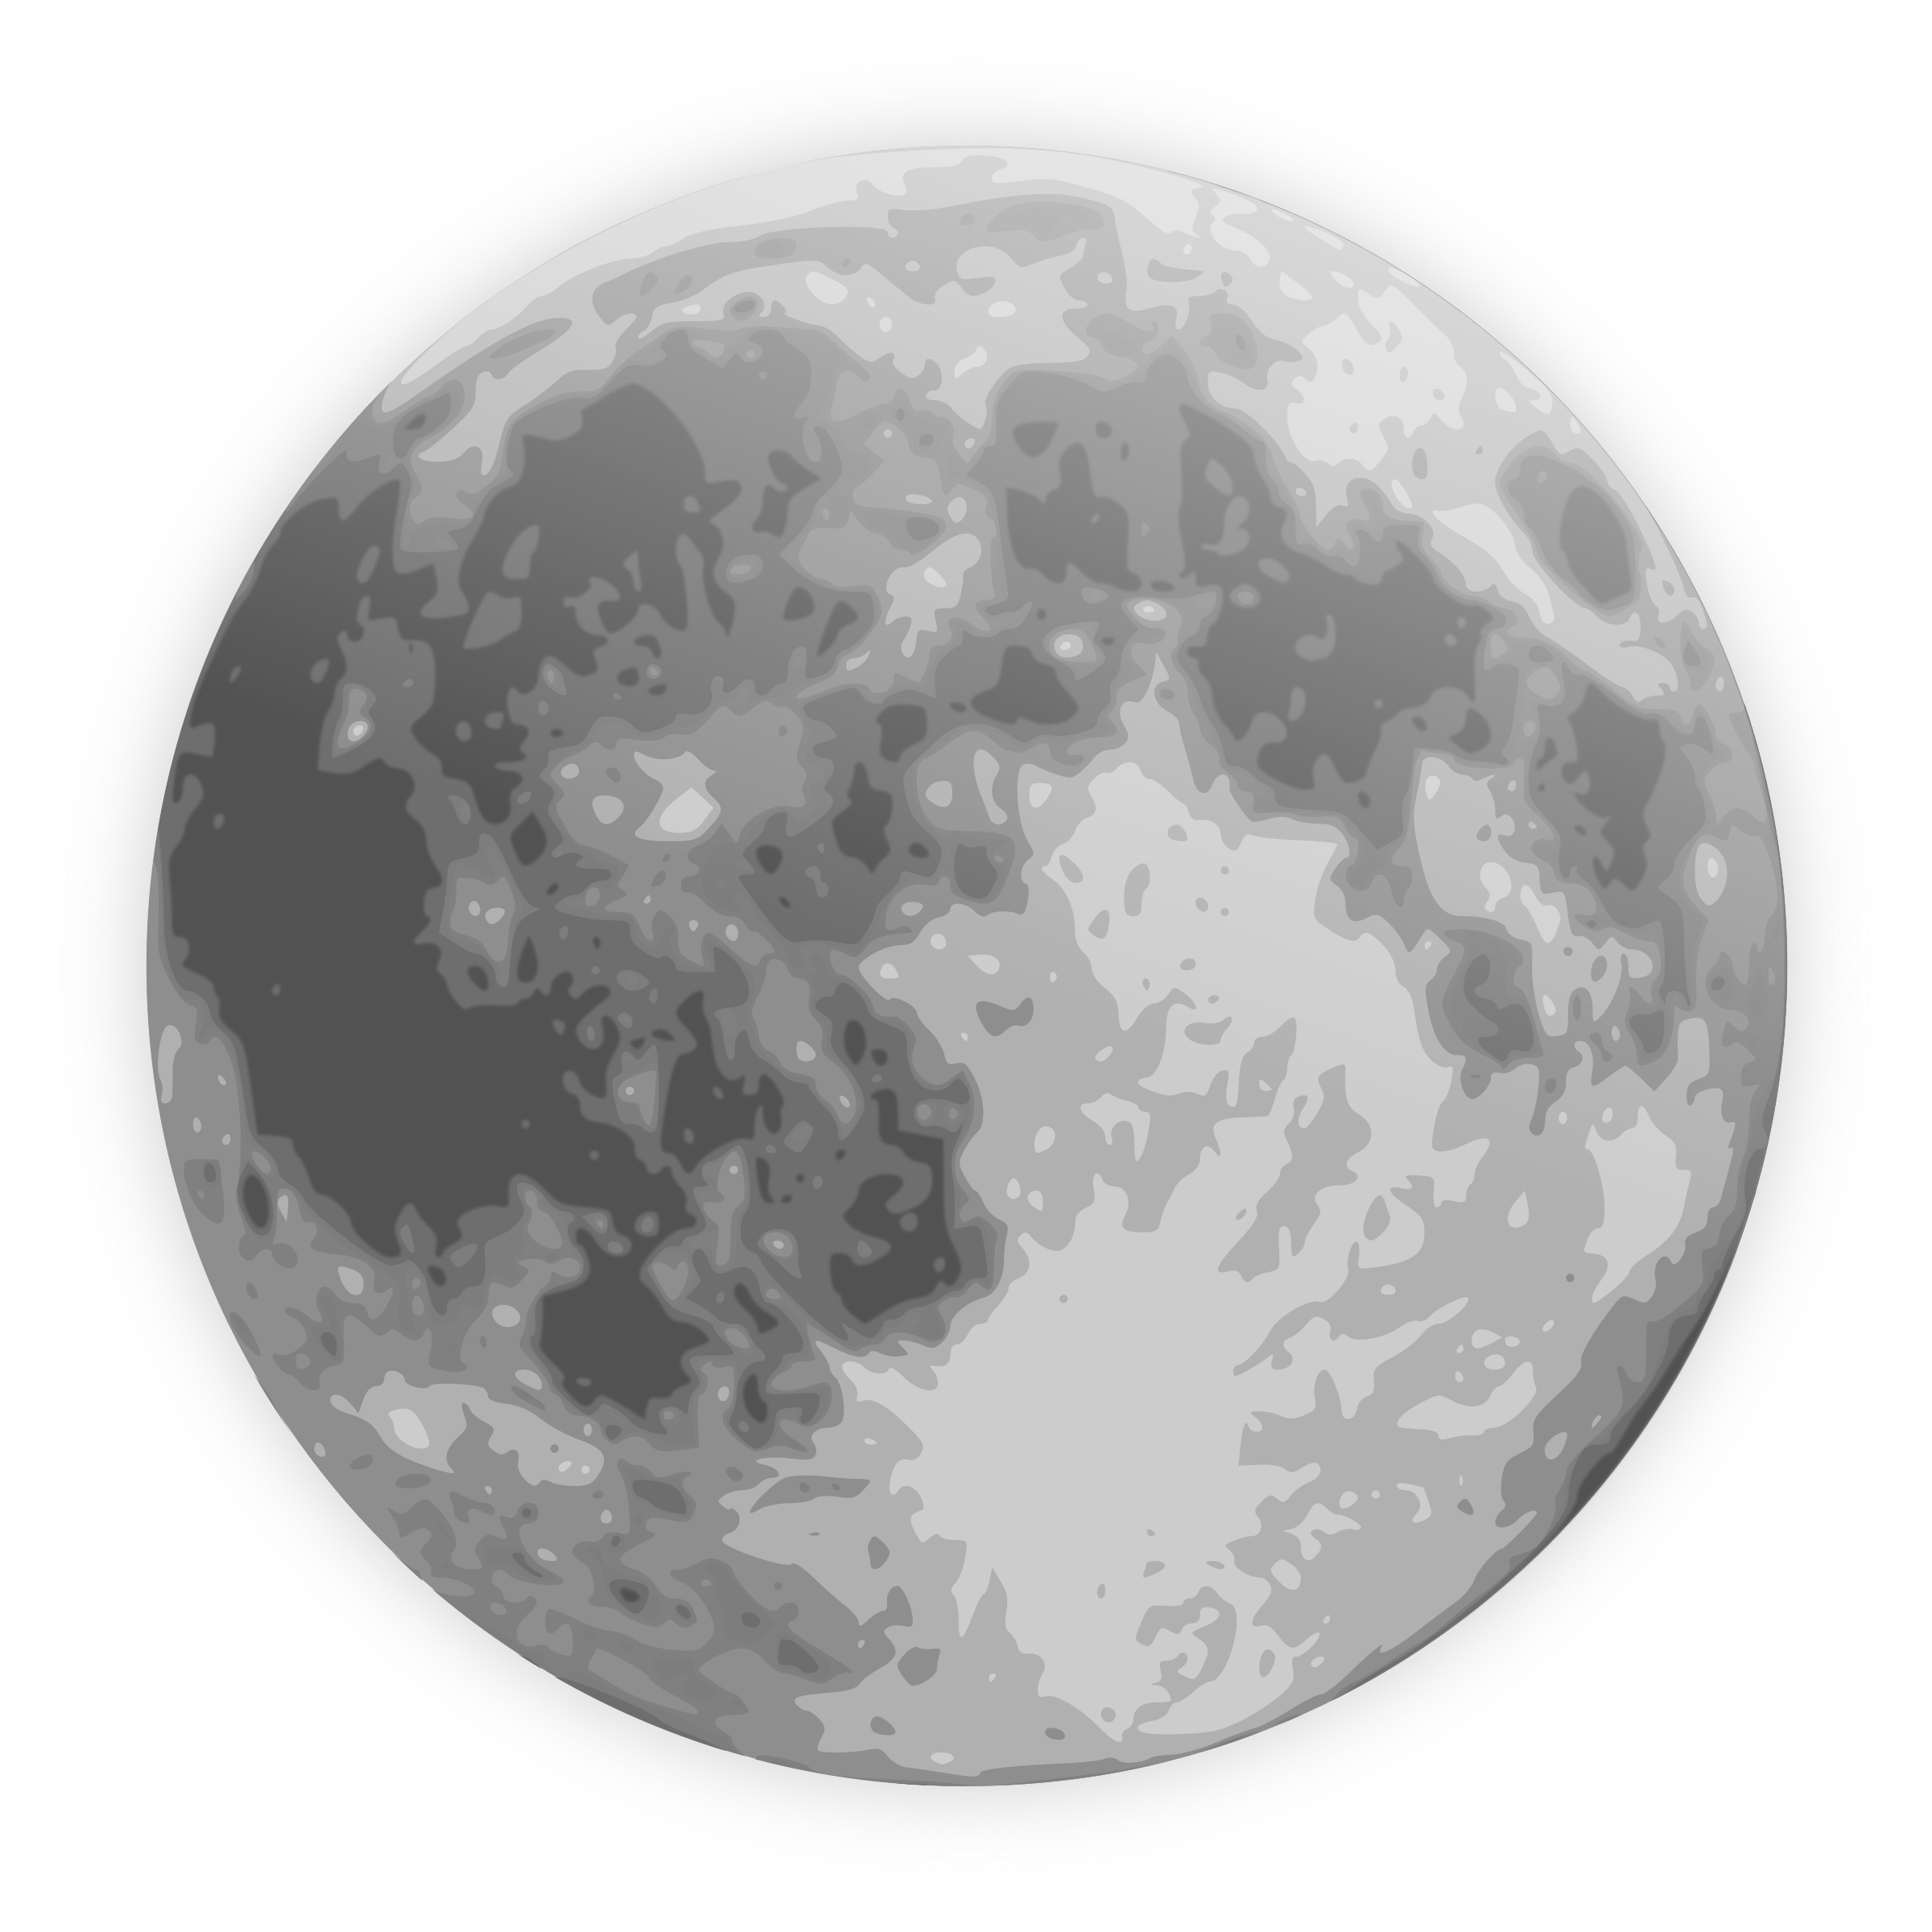 Full Moon clip art